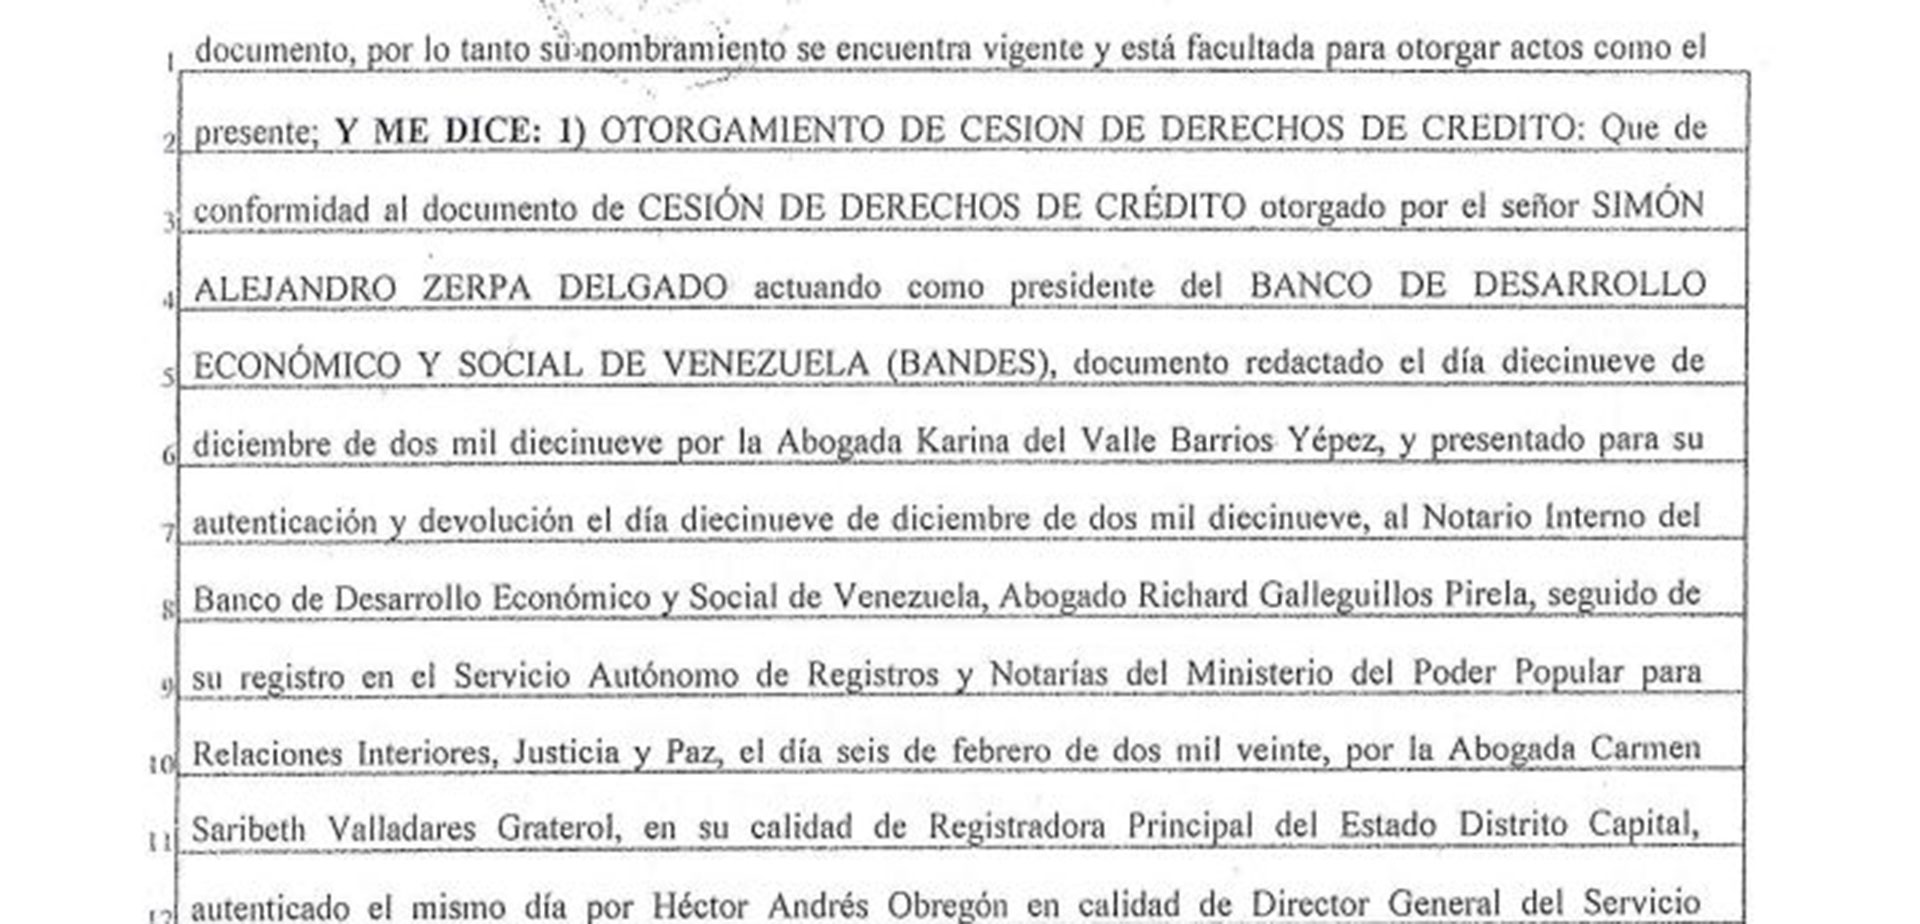  Extracto del documento con el que una notaria salvadoreña vinculada con Alba Petróleos legaliza la cesión de explotación de interés de deuda pública hecha por el banco central de Venezuela a favor de una empresa en El Salvador vinculada a un entramado de lavado de dinero.